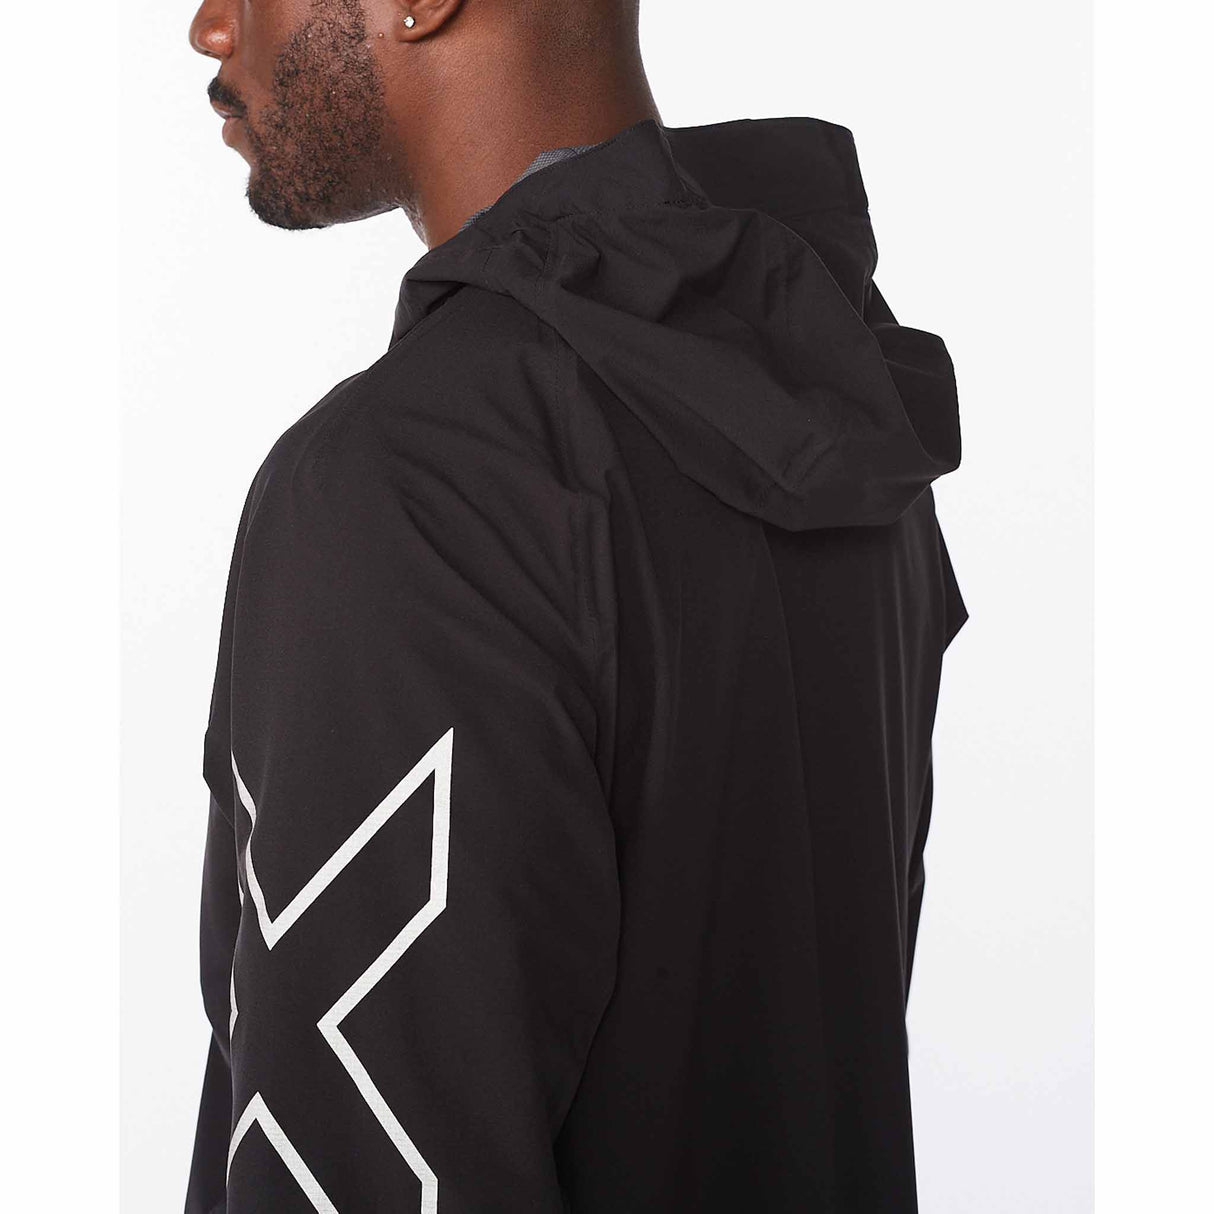 2XU manteau imperméable Light Speed WP Jacket pour homme Noir/Argent vue de côté